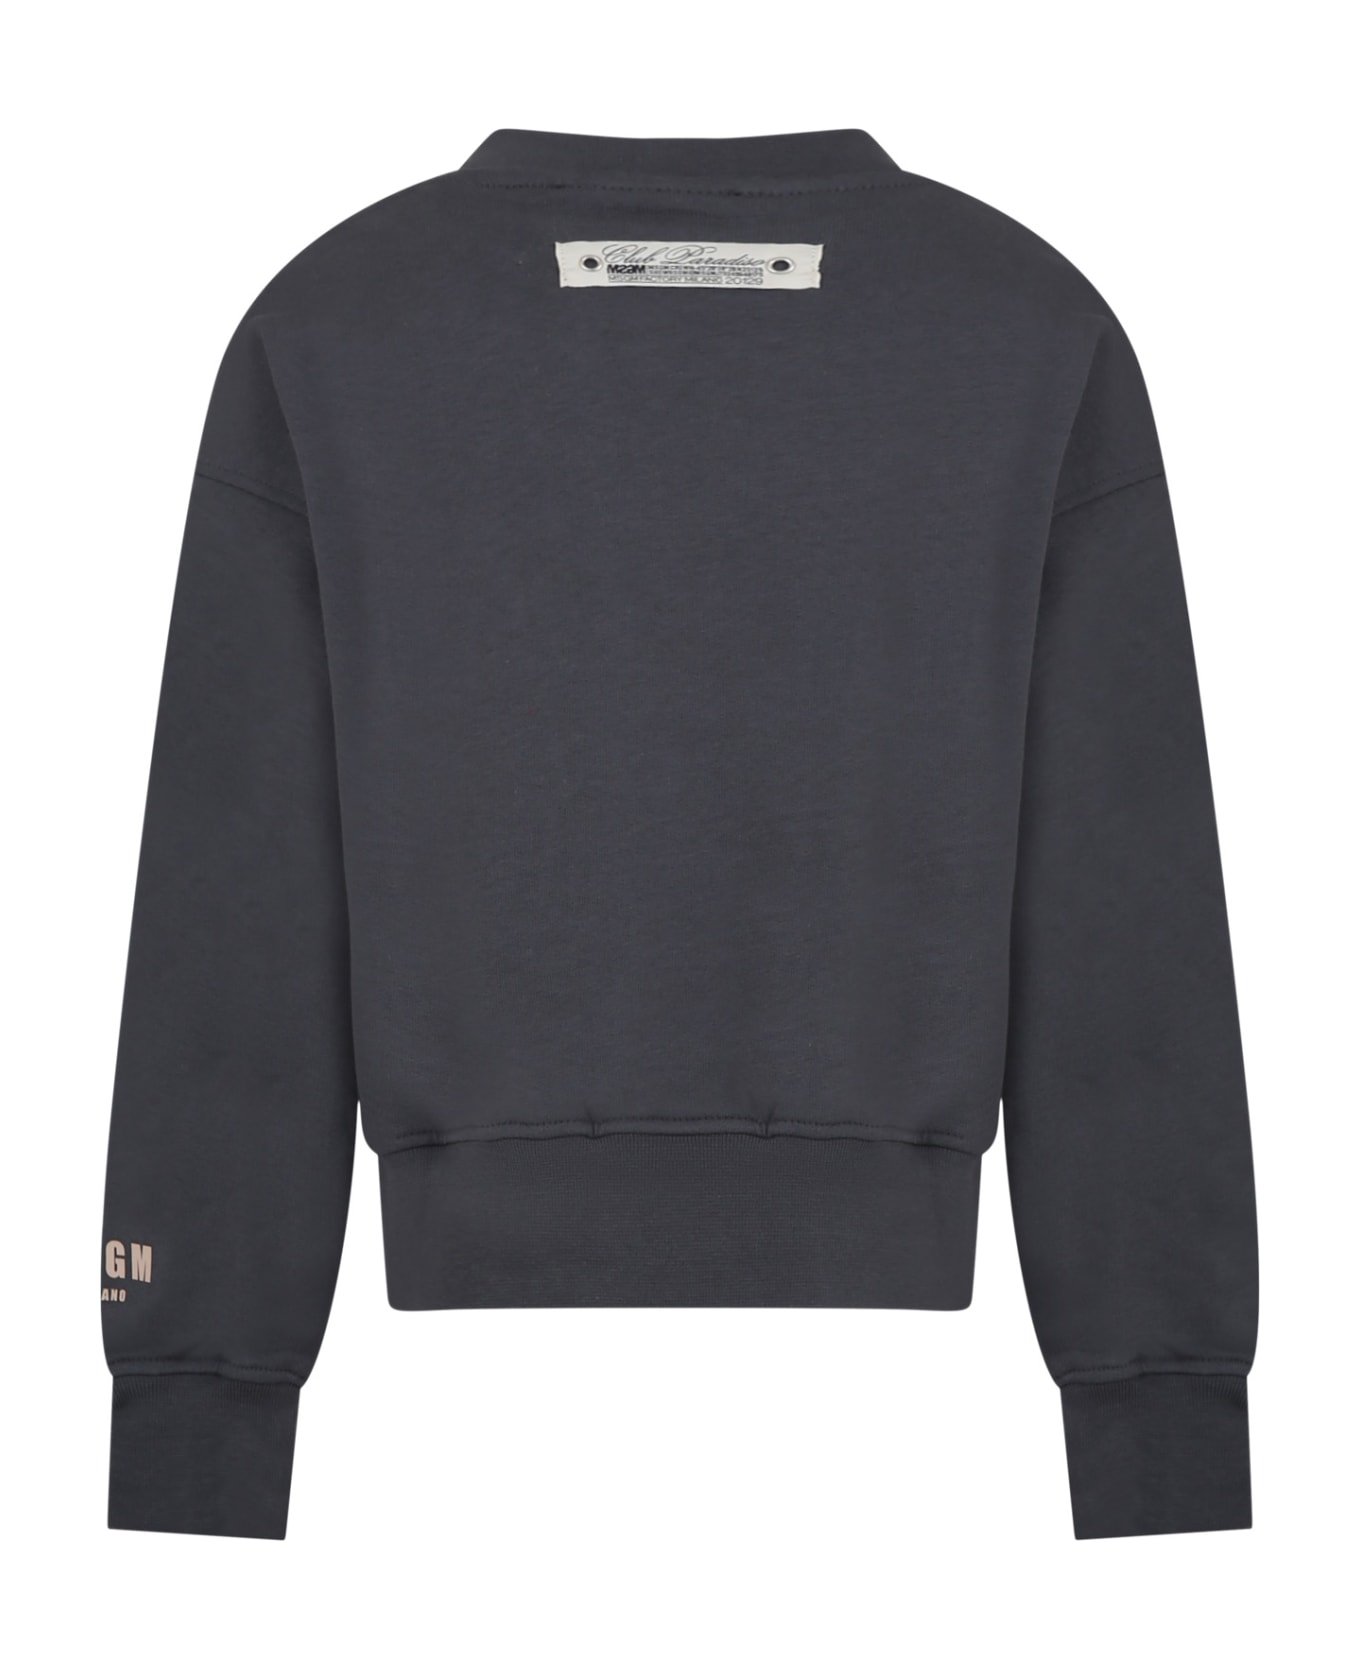 MSGM Grey Sweatshirt For Boy With Logo - Grey